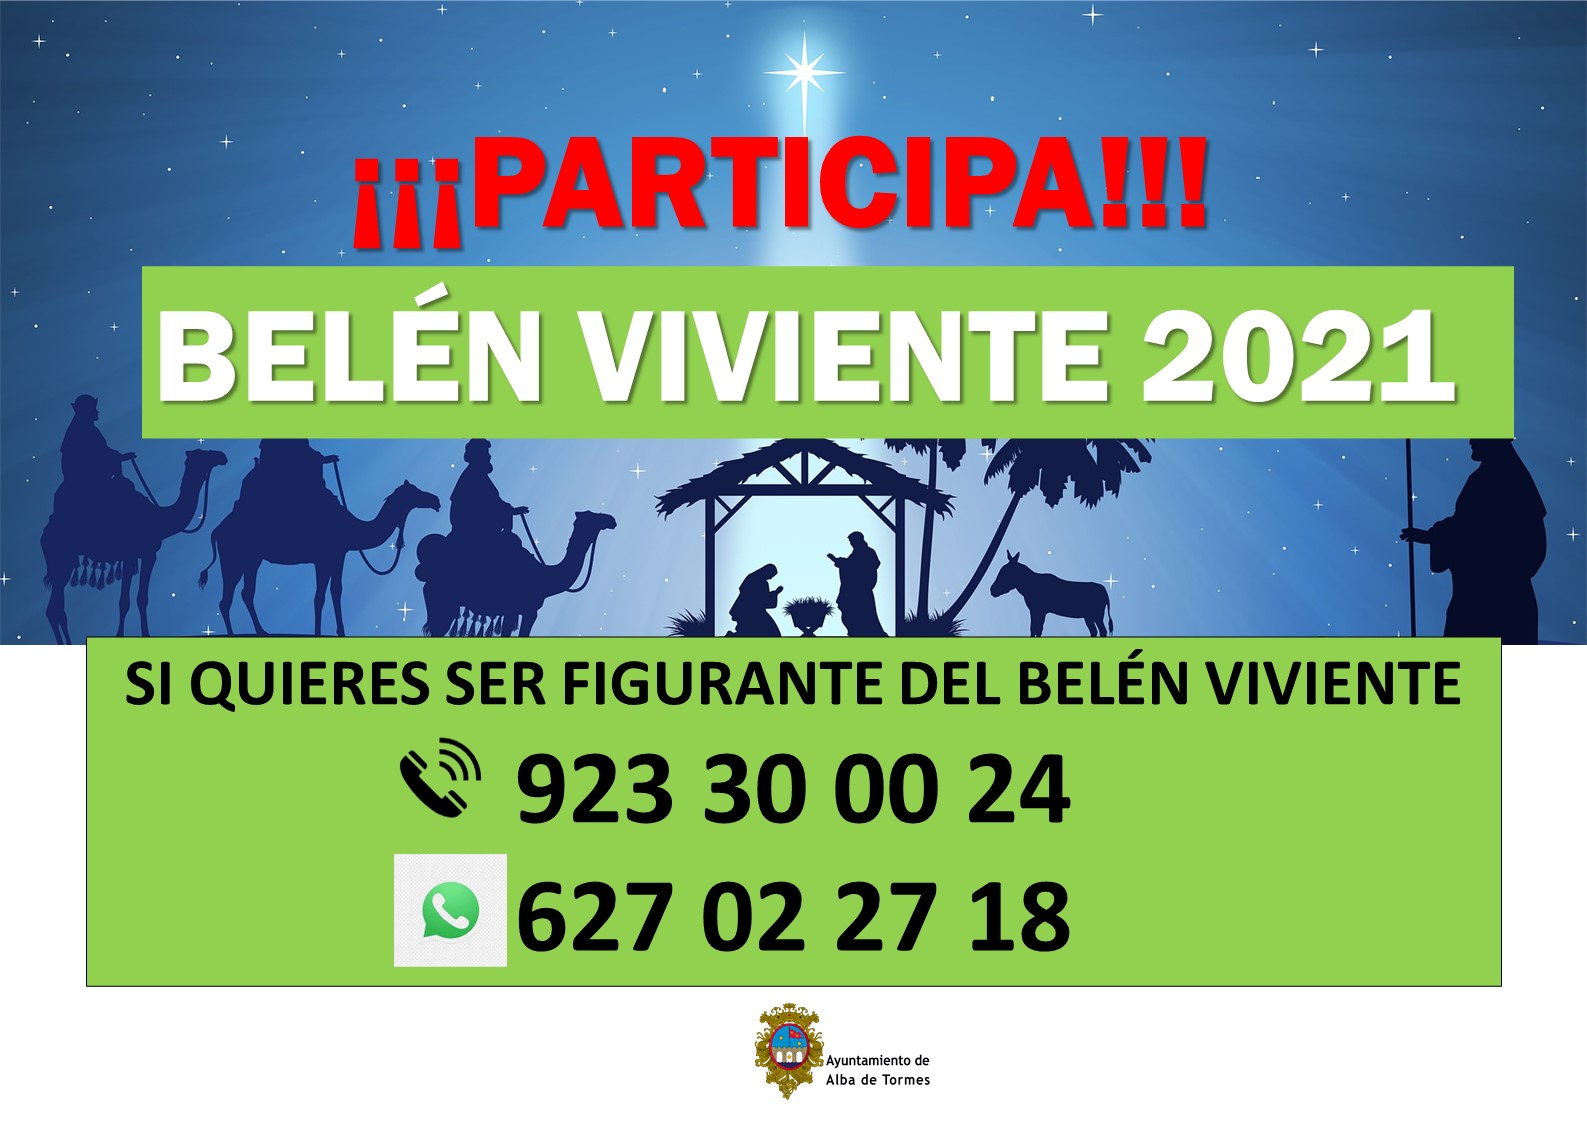 Foto 1 - El Ayuntamiento de Alba de Tormes fija la celebración del Belén Viviente el 26 de diciembre y solicita la colaboración ciudadana